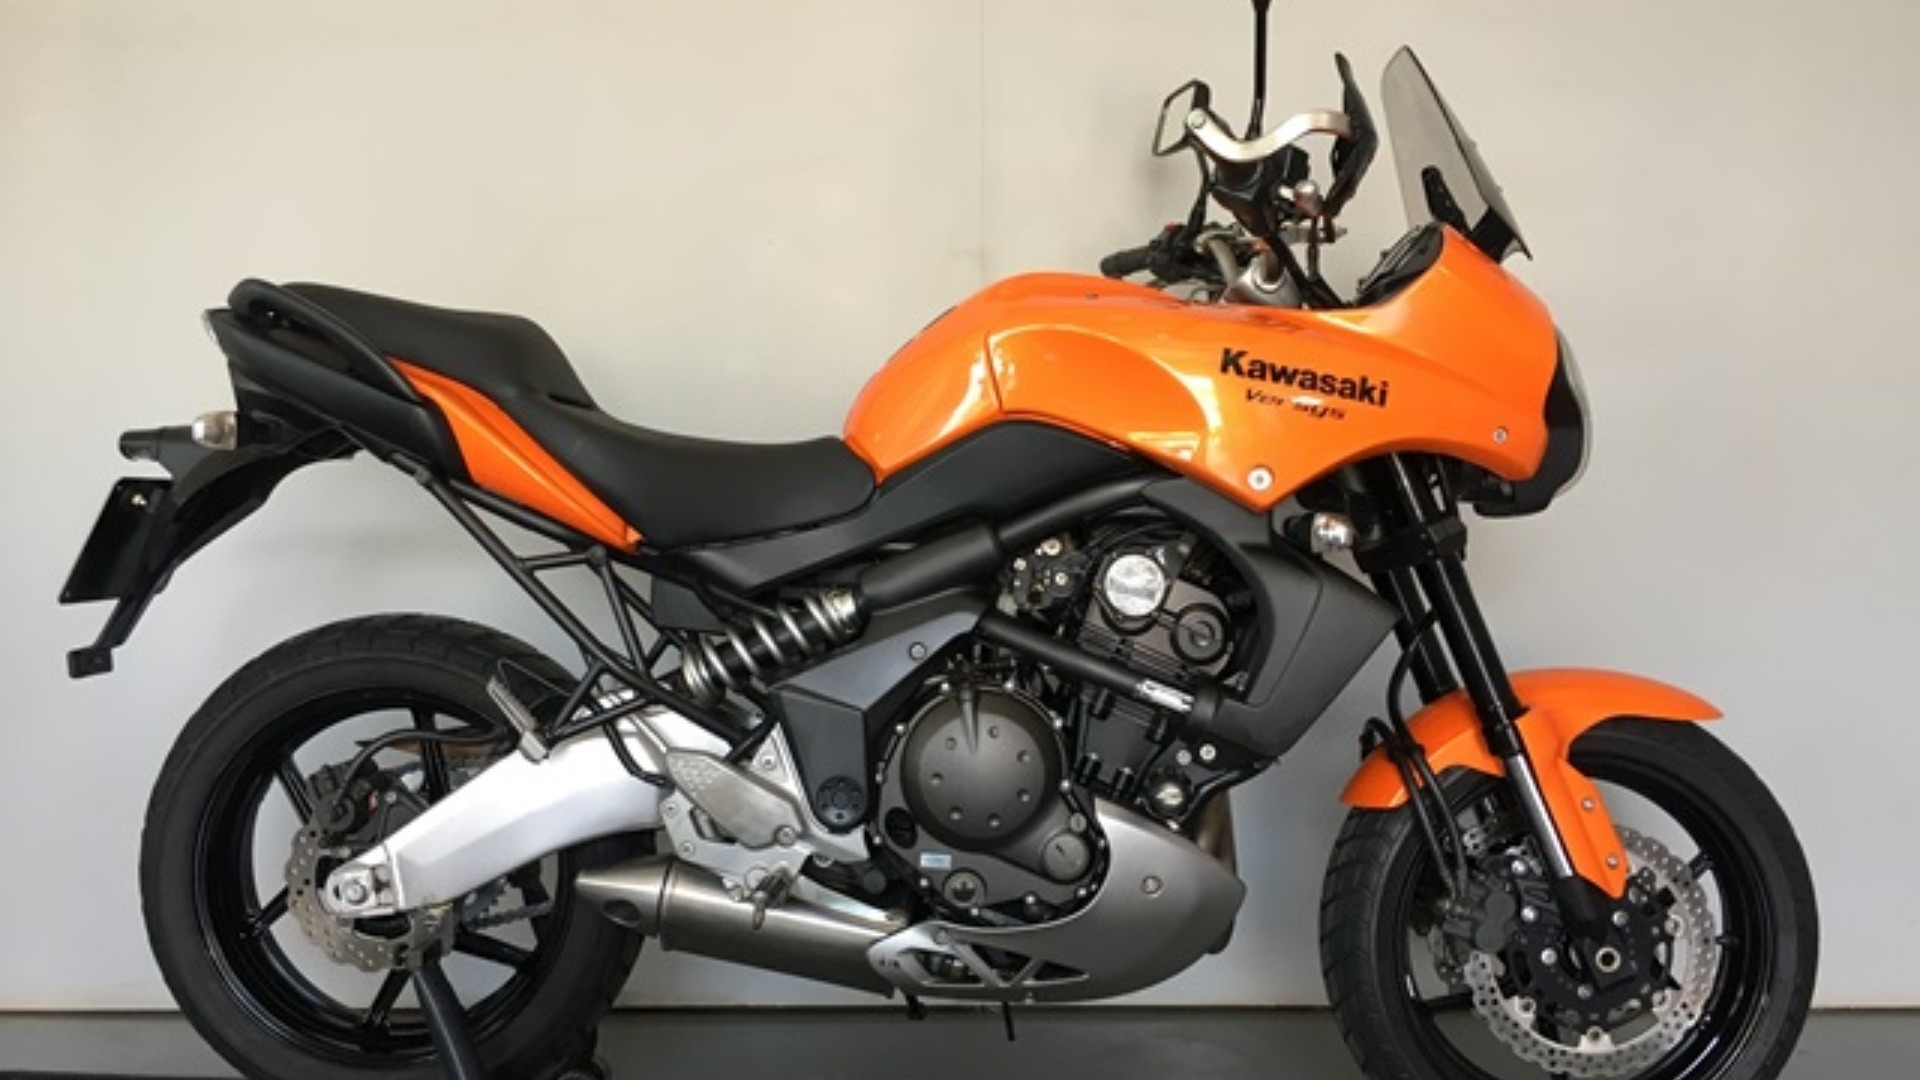 2010 Kawasaki for sale in | Auto Mart